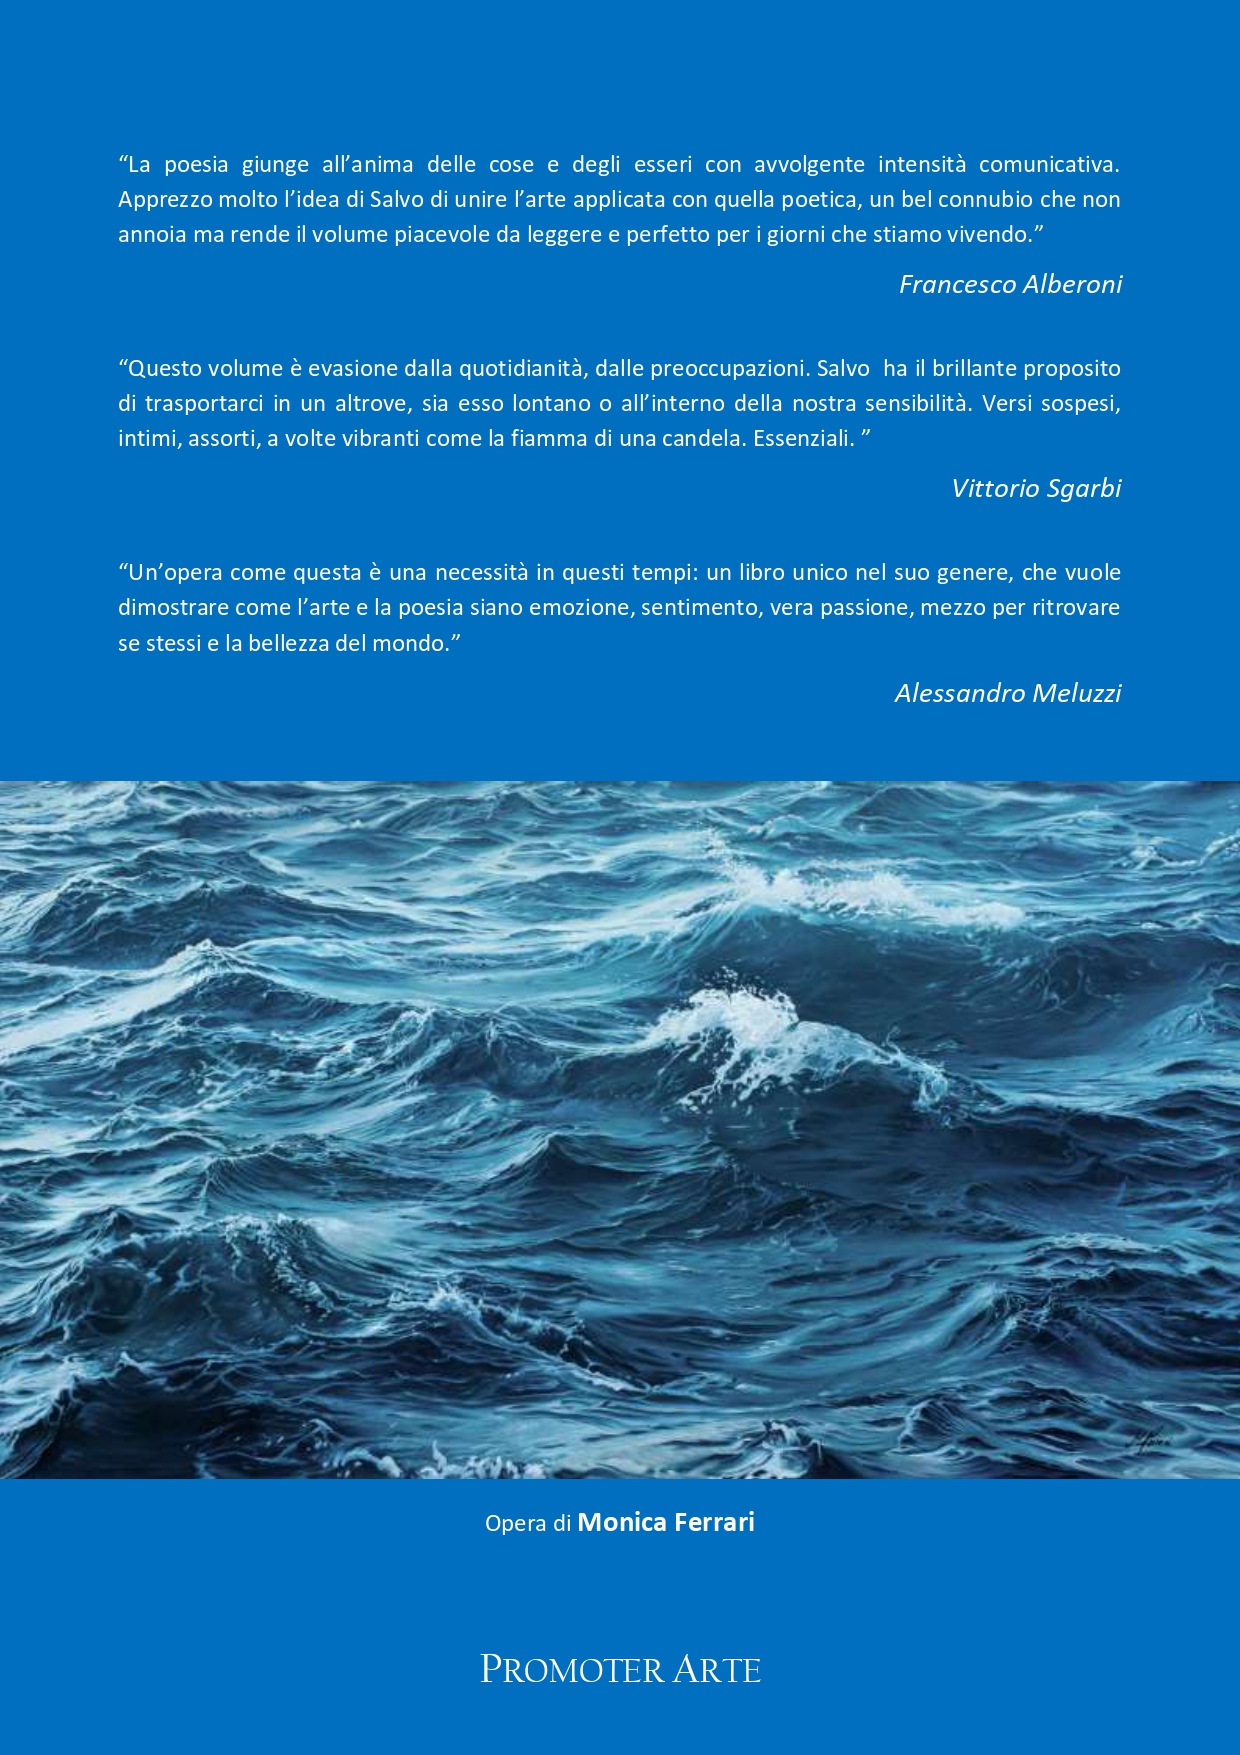 “La Poesia e l’Arte”: in quarta di copertina del nuovo libro di Salvo Nugnes l’opera di Monica Ferrari